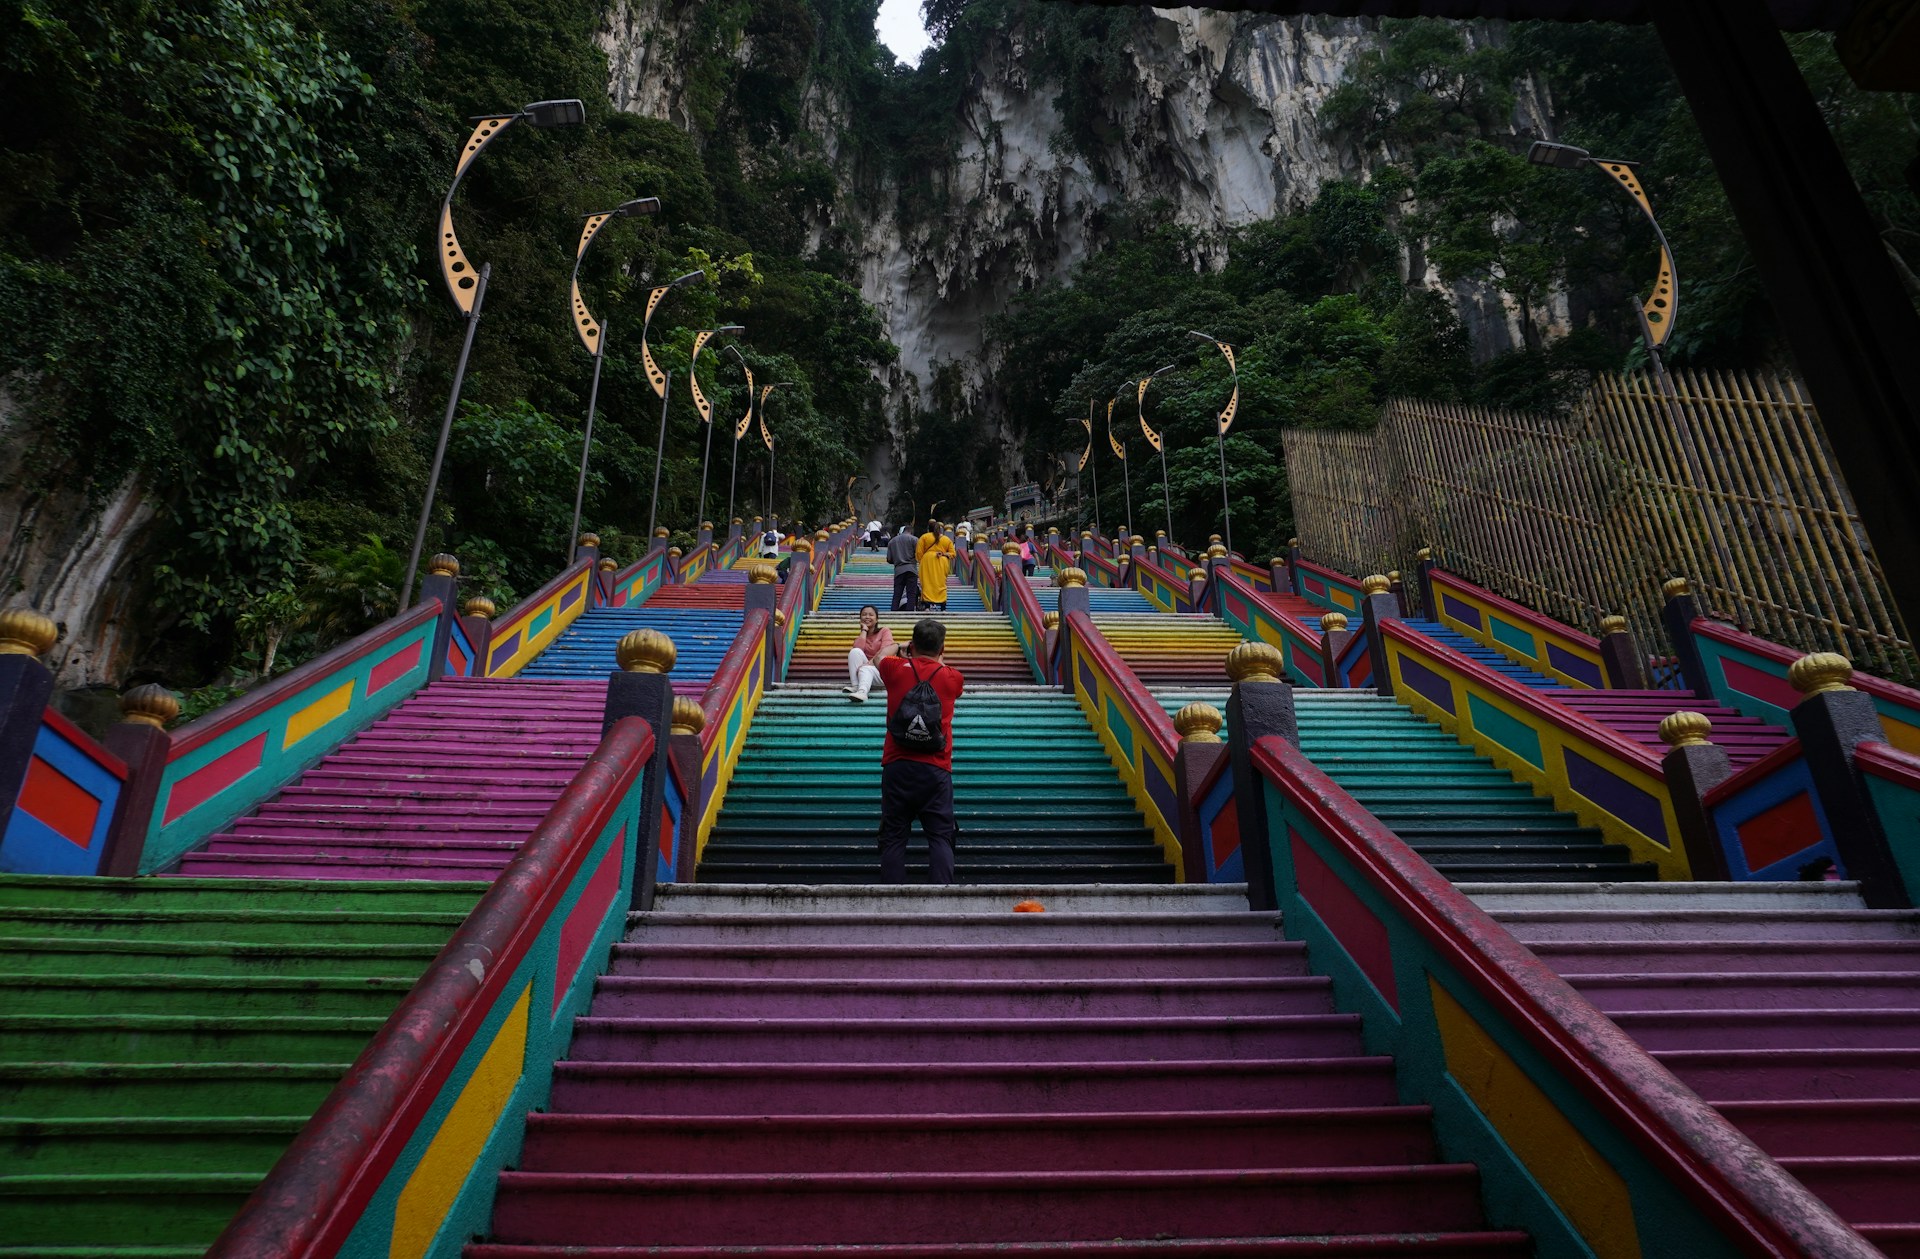 Drevni hram u Maleziji dobija lift